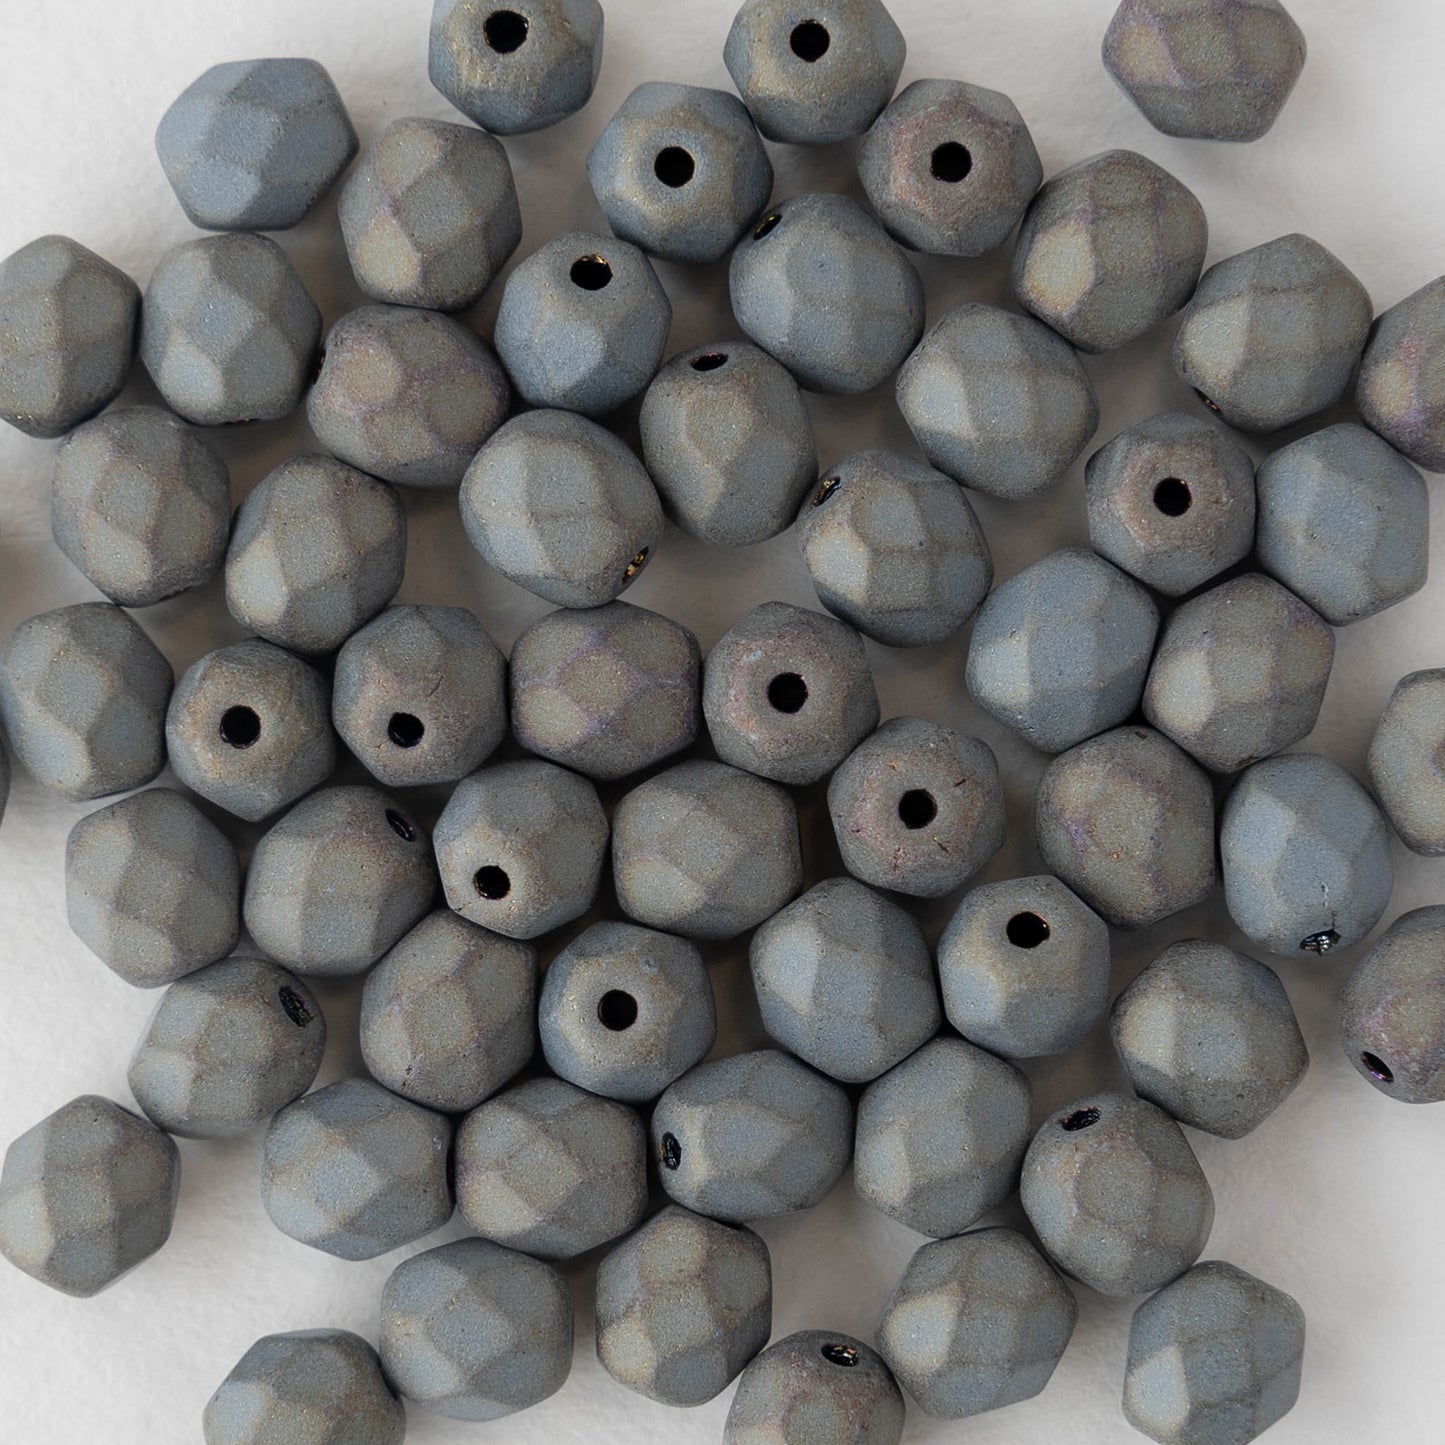 French White Heart Cobalt Blue Beads 4mm (10 Grams)